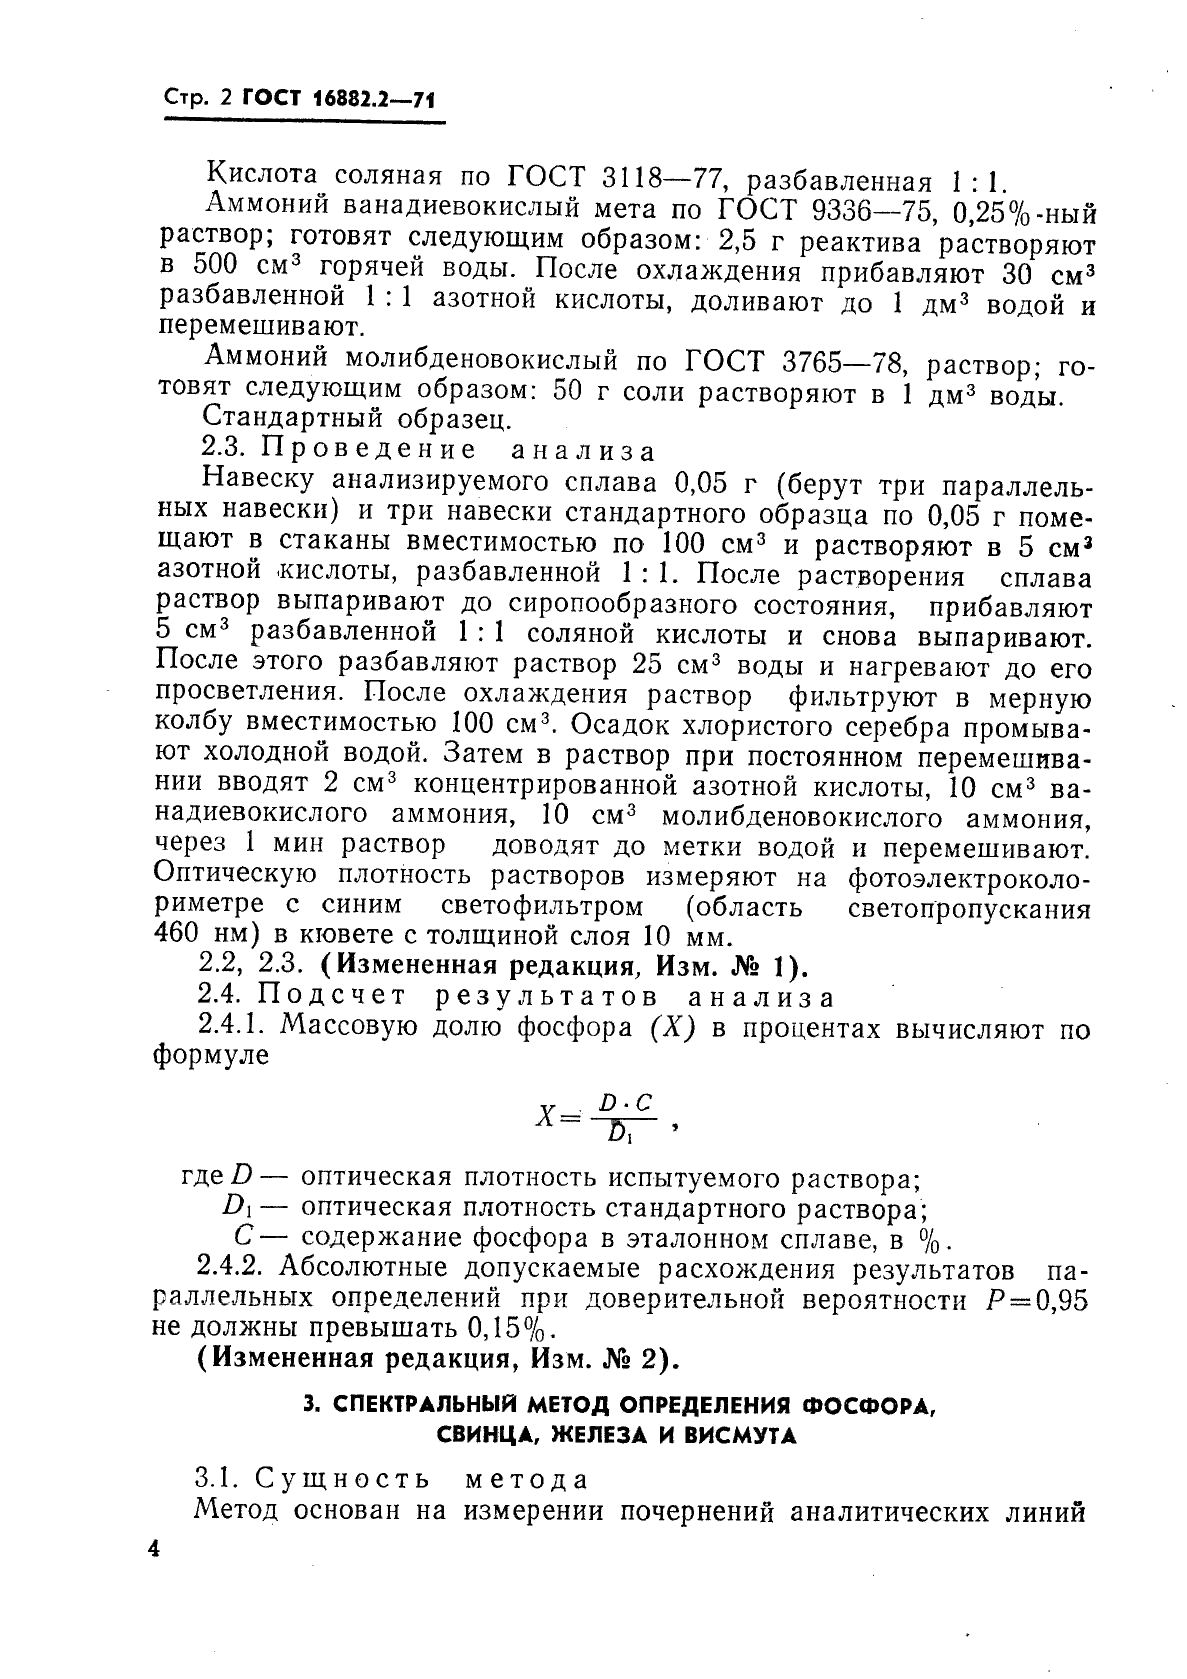 ГОСТ 16882.2-71 Серебряно-медно-фосфорные припои. Методы определения массовой доли фосфора, свинца, железа и висмута (фото 2 из 5)